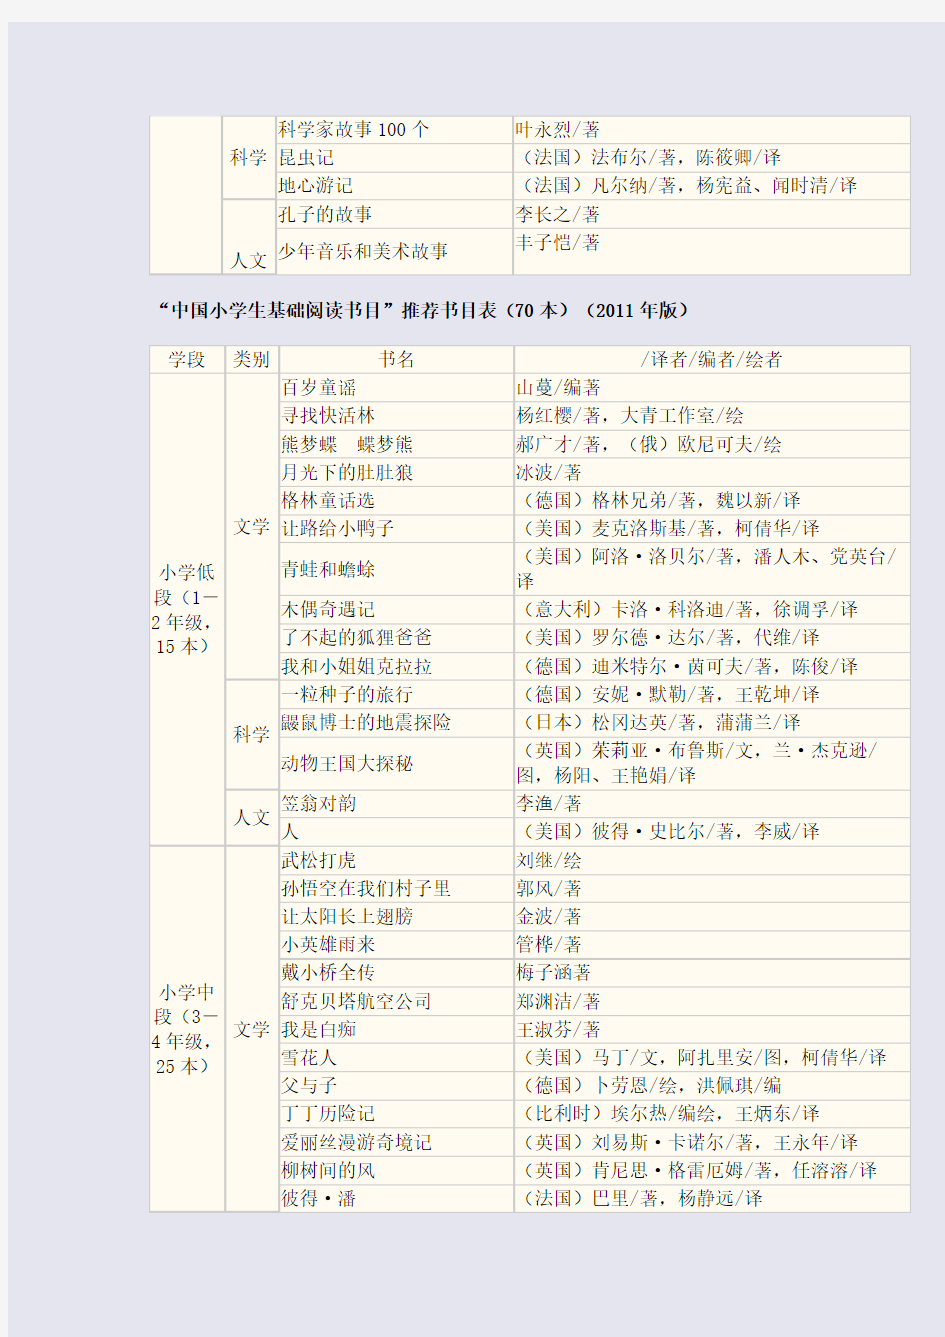 中国小学生基础阅读书目表(30本)